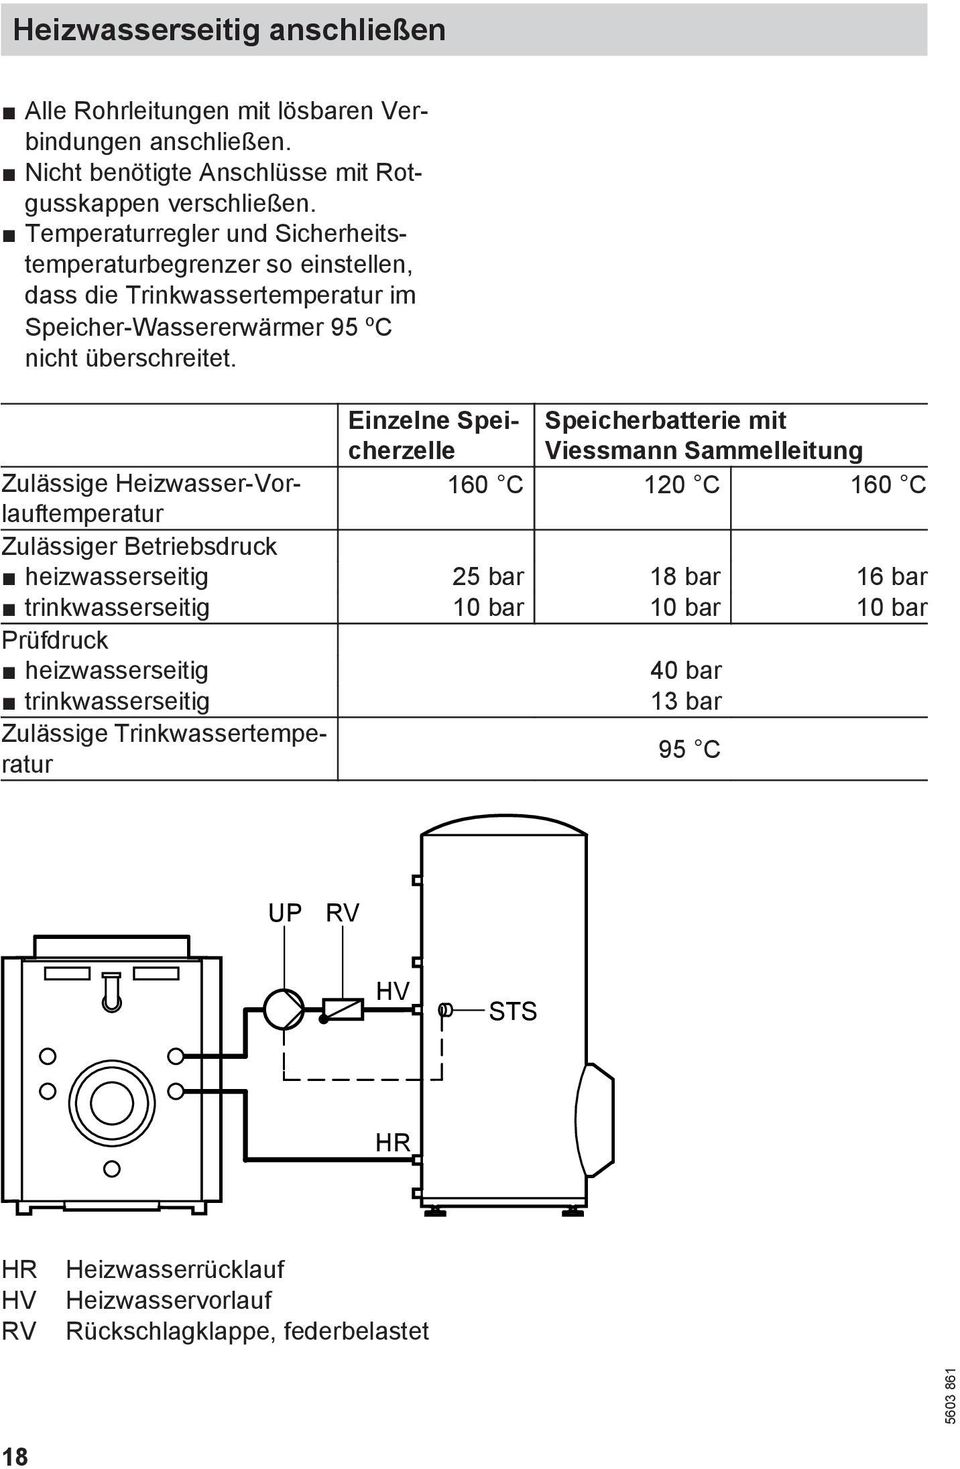 Einzelne Speicherzelle Speicherbatterie mit Viessmann Sammelleitung Zulässige Heizwasser-Vorlauftemperatur 160 C 120 C 160 C Zulässiger Betriebsdruck heizwasserseitig 25 bar 18